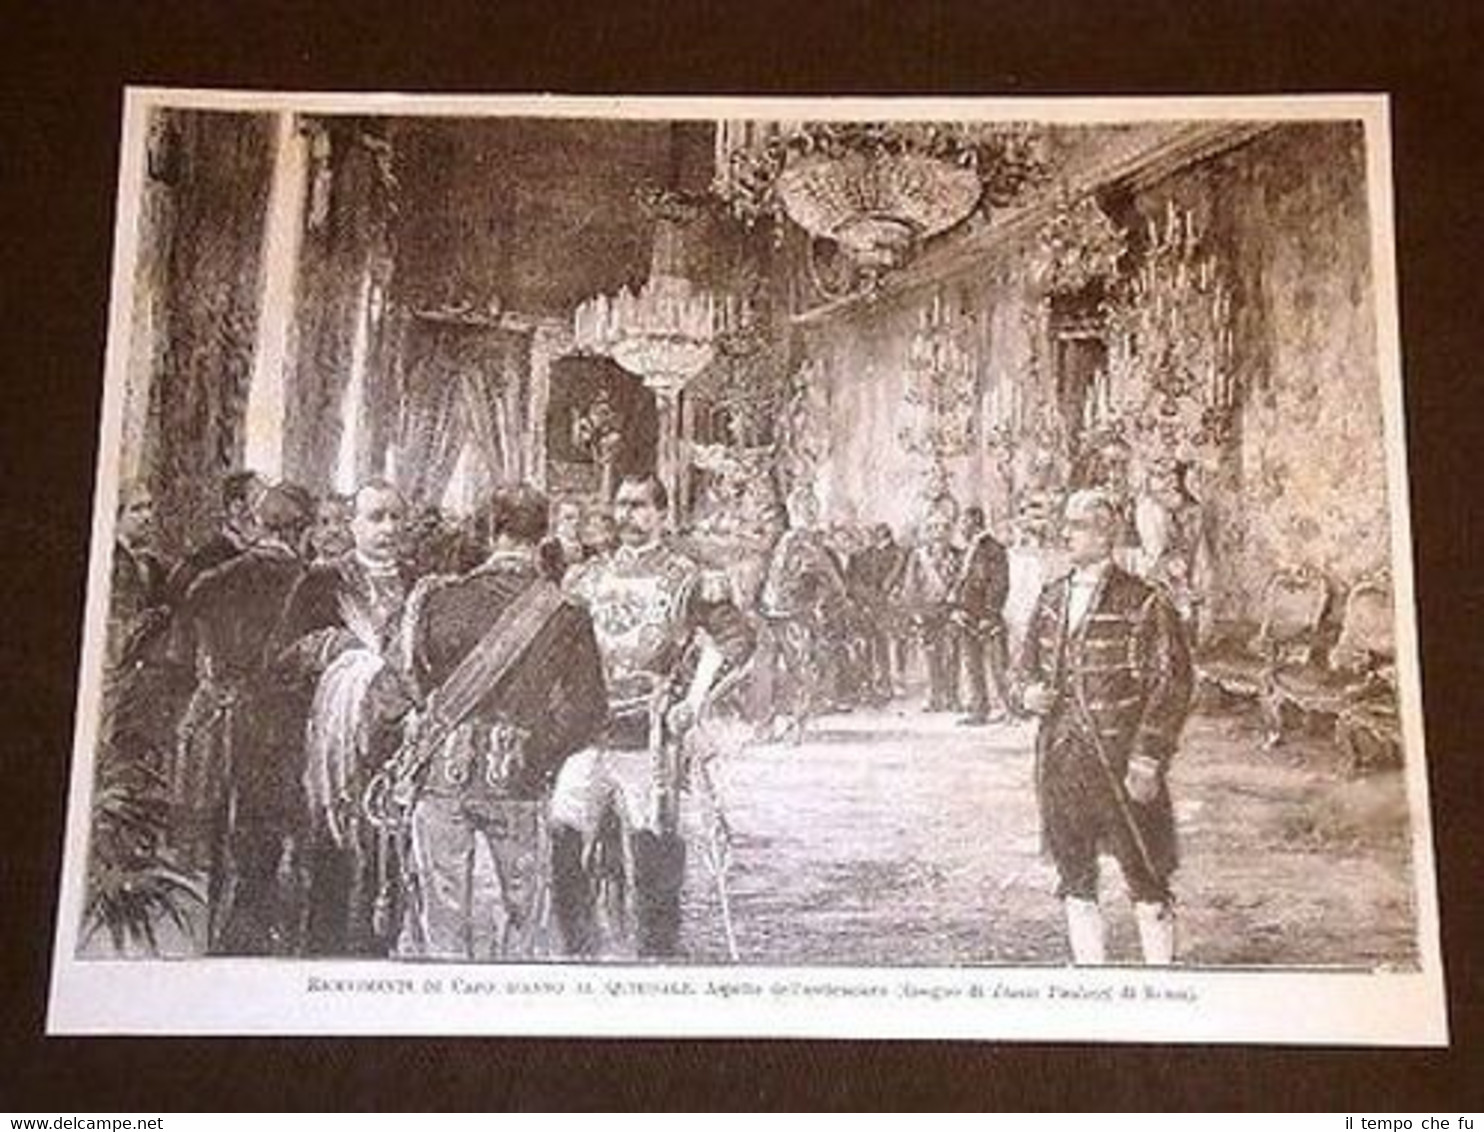 Roma Ricevimenti di Capo d'anno al Quirinale nel 1898 Aspetto …